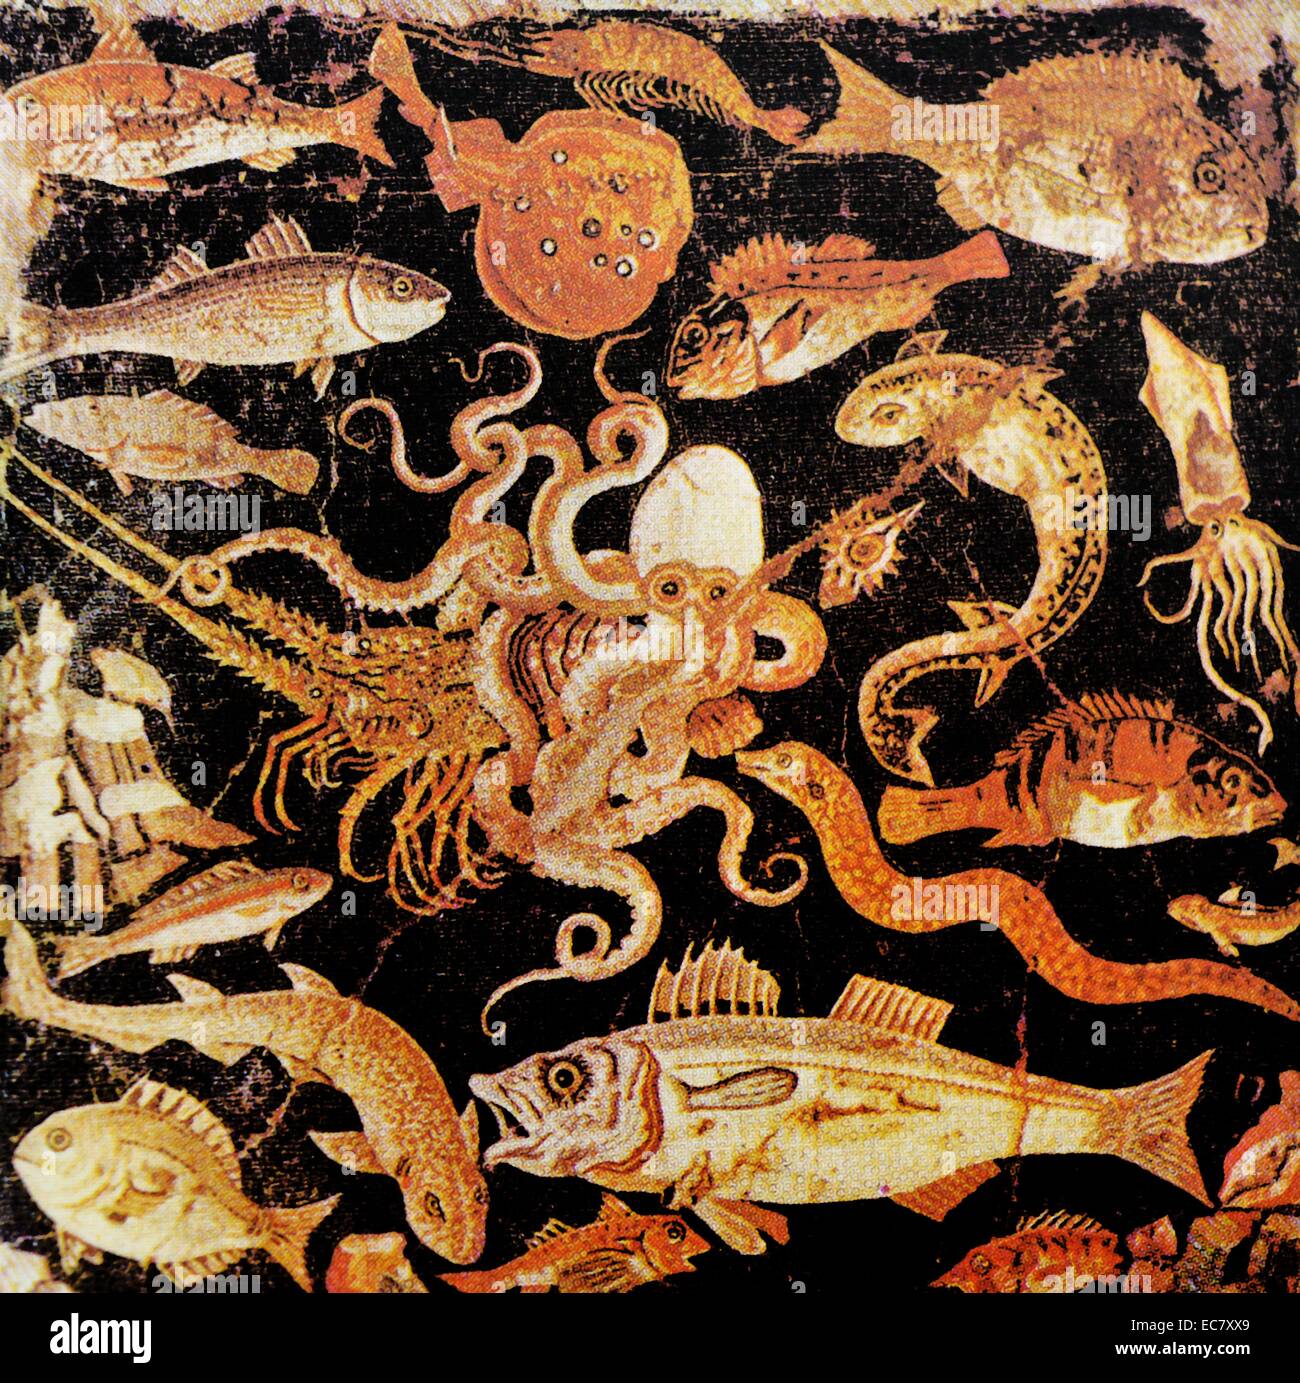 Marine Leben. Bodenmosaik aus dem Haus des Faun, Pompeji. Wahrscheinlich eine Kopie im Zweiten pompejanischen Stil einer hellenistischen Malerei. Stockfoto